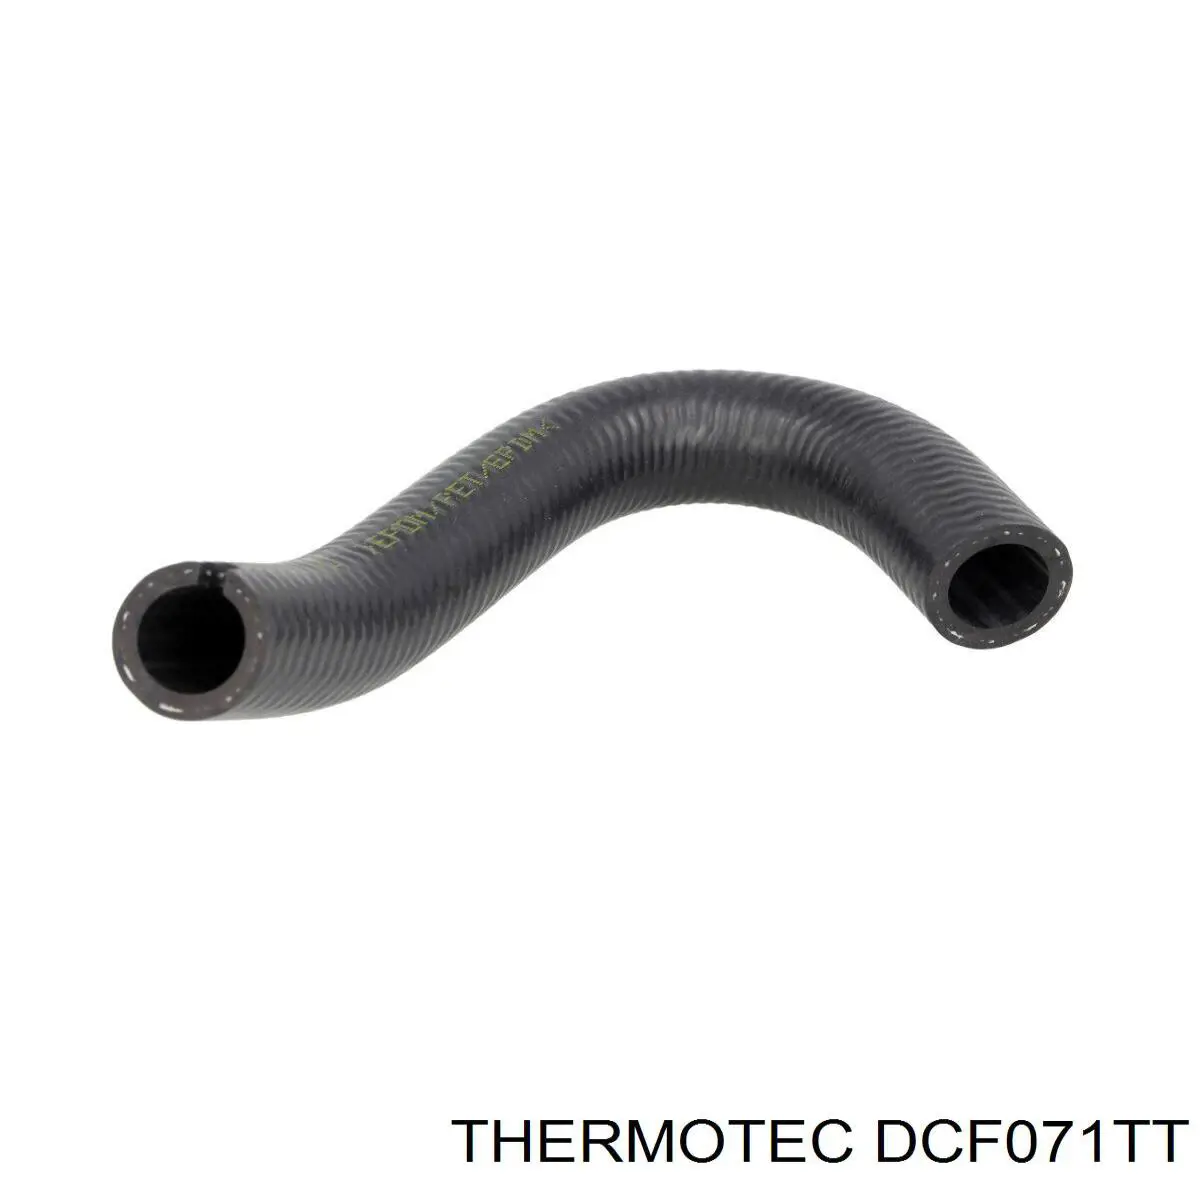 DCF071TT Thermotec manguera tuberia de radiador (gases de escape)